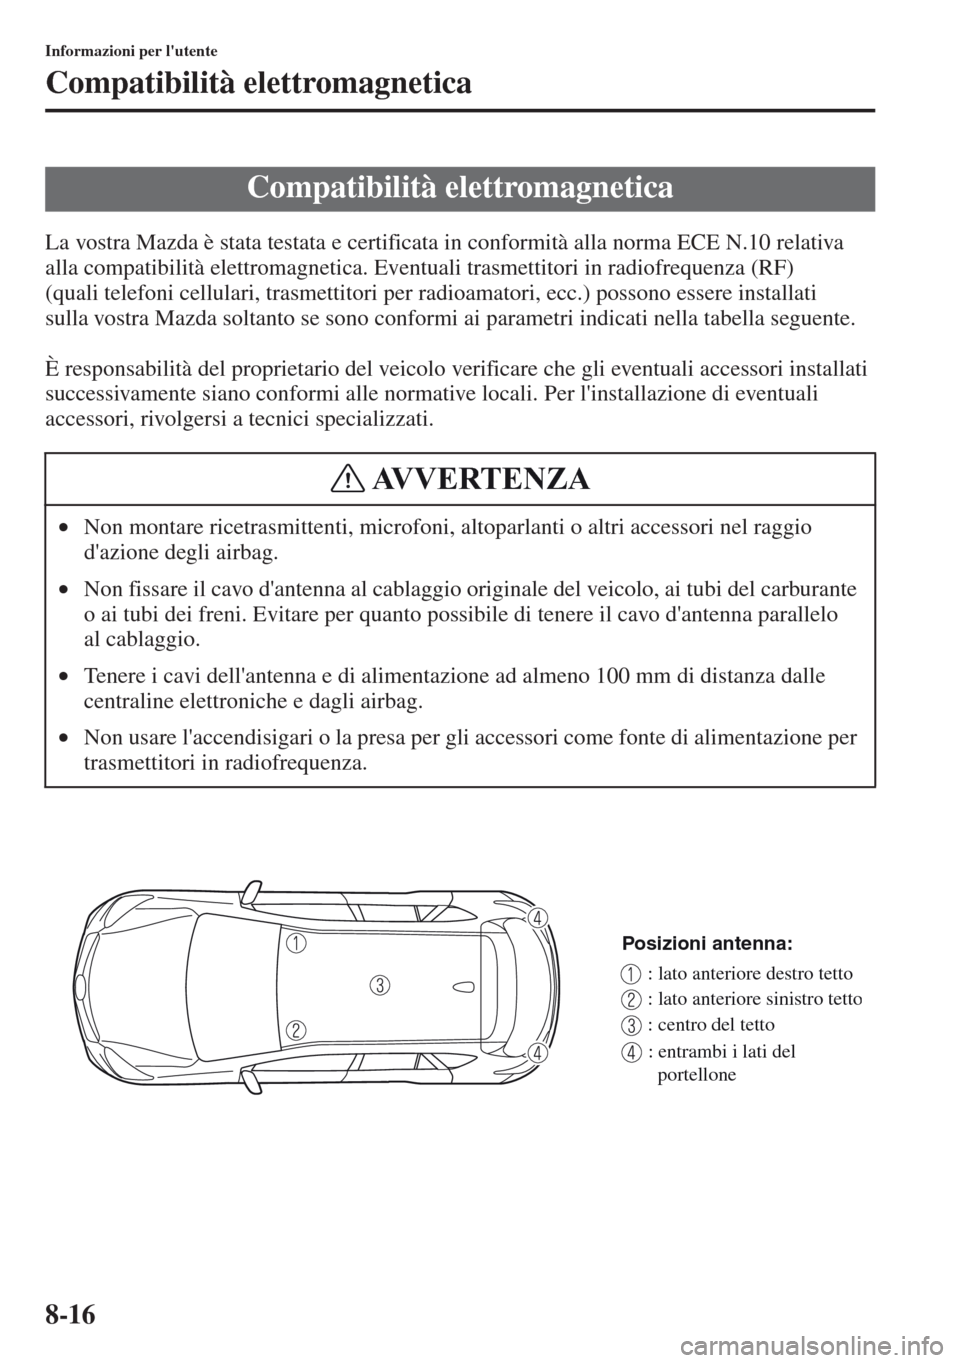 MAZDA MODEL CX-5 2013  Manuale del proprietario (in Italian) 8-16
Informazioni per lutente
Compatibilità elettromagnetica
La vostra Mazda è stata testata e certificata in conformità alla norma ECE N.10 relativa 
alla compatibilità elettromagnetica. Eventua